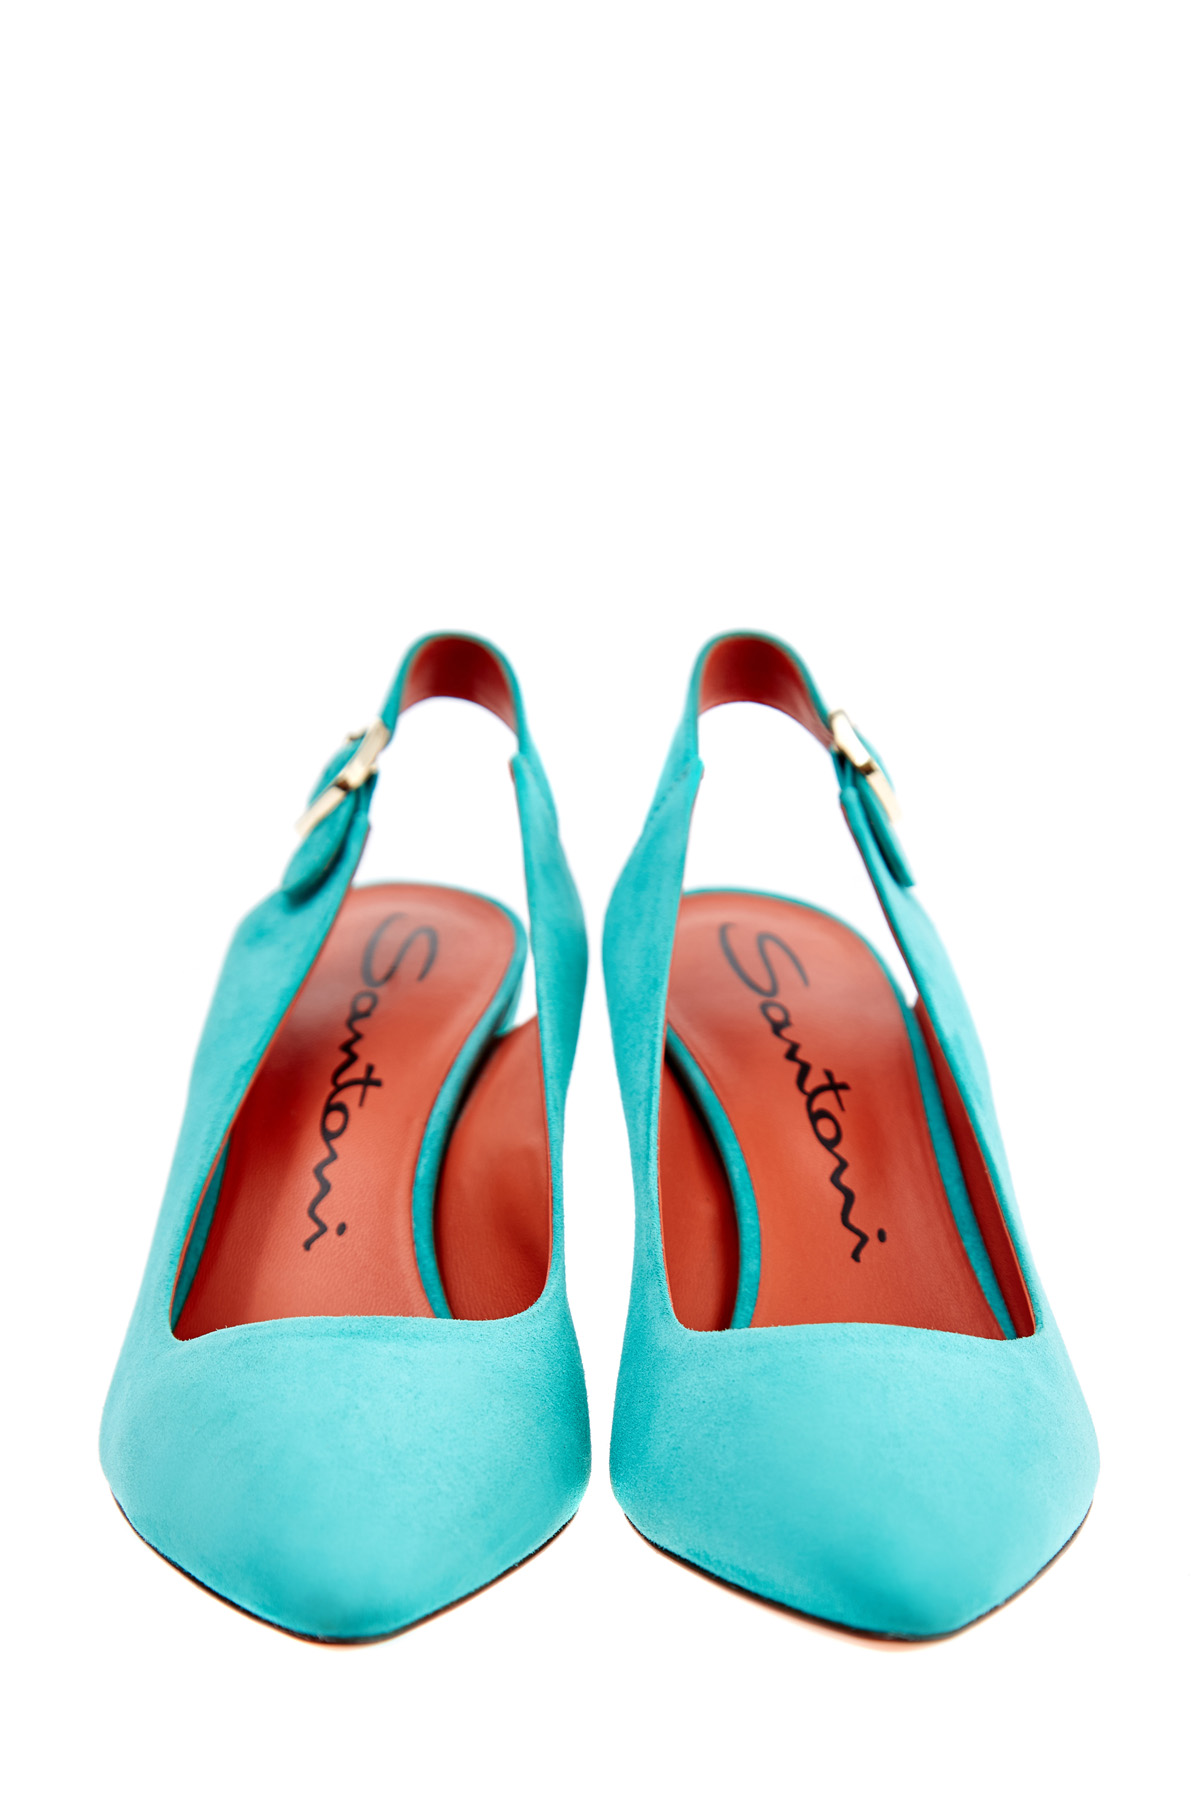 Замшевые туфли на устойчивом каблуке бирюзового оттенка SANTONI, цвет бирюзовый, размер 36.5;39.5;40 - фото 5